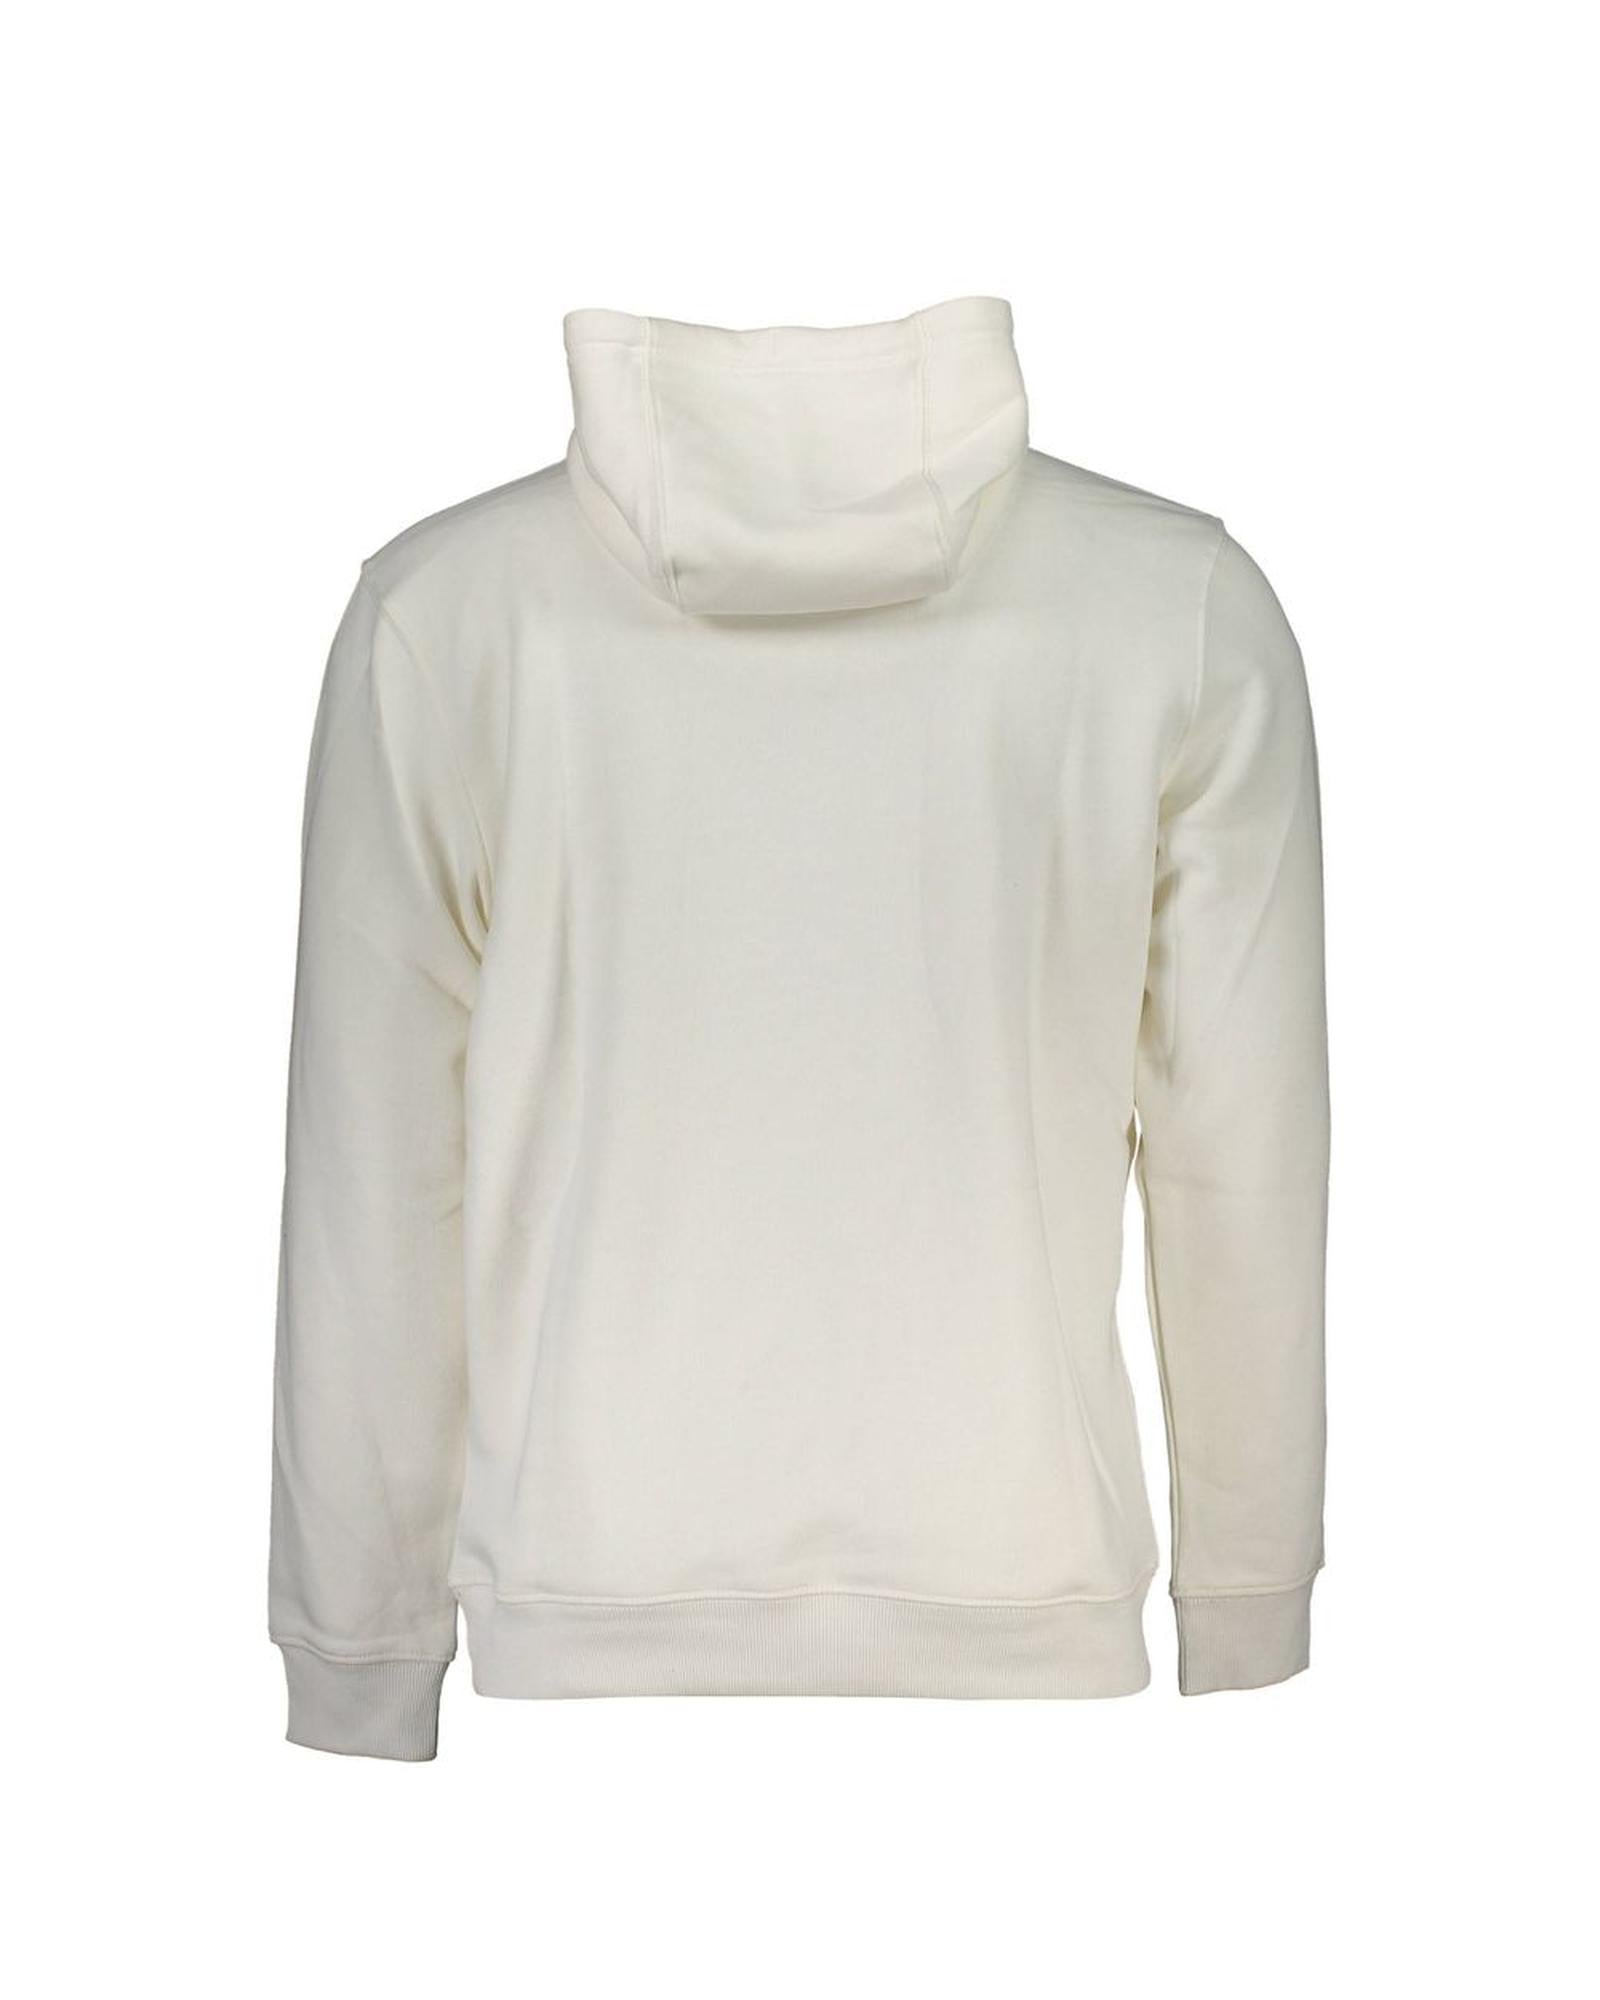 Men's White Cotton Sweater - L